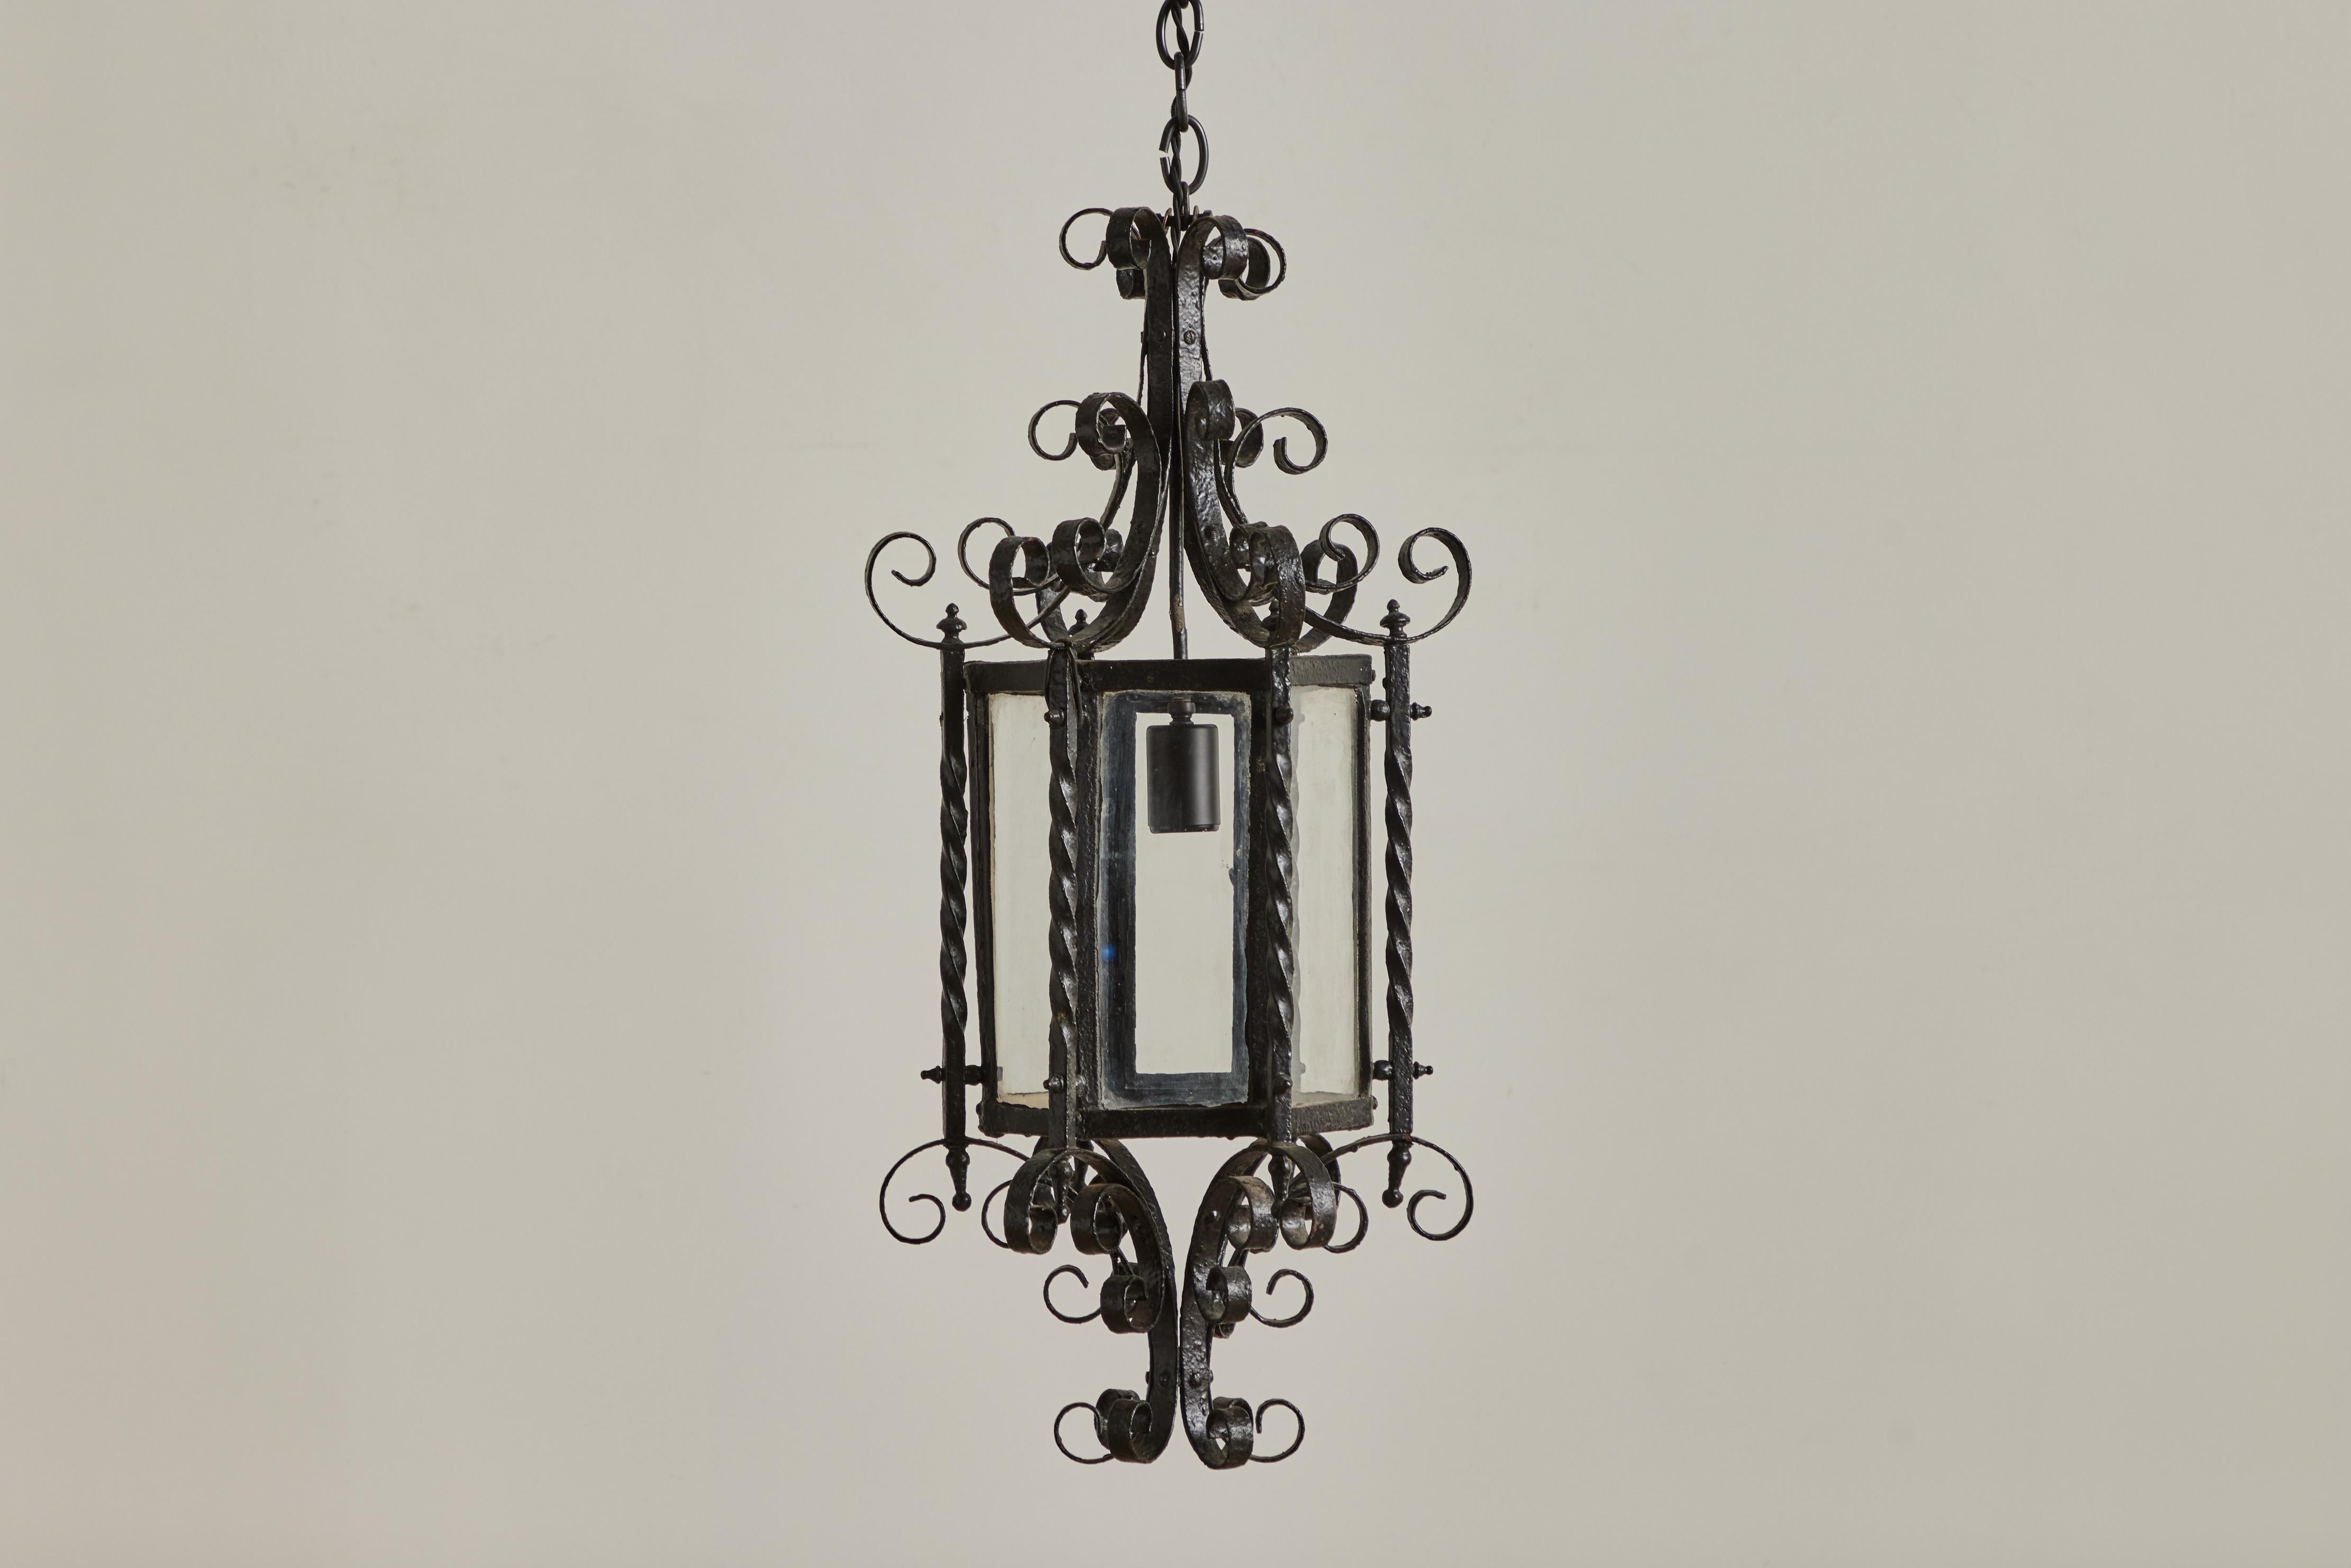 Pendentif néo-gothique en fer et en verre provenant de France vers 1940. Cette suspension a été nouvellement câblée pour une installation en dur et nécessite une ampoule E26 standard. L'usure visible sur le fer correspond à l'âge et à l'utilisation. 